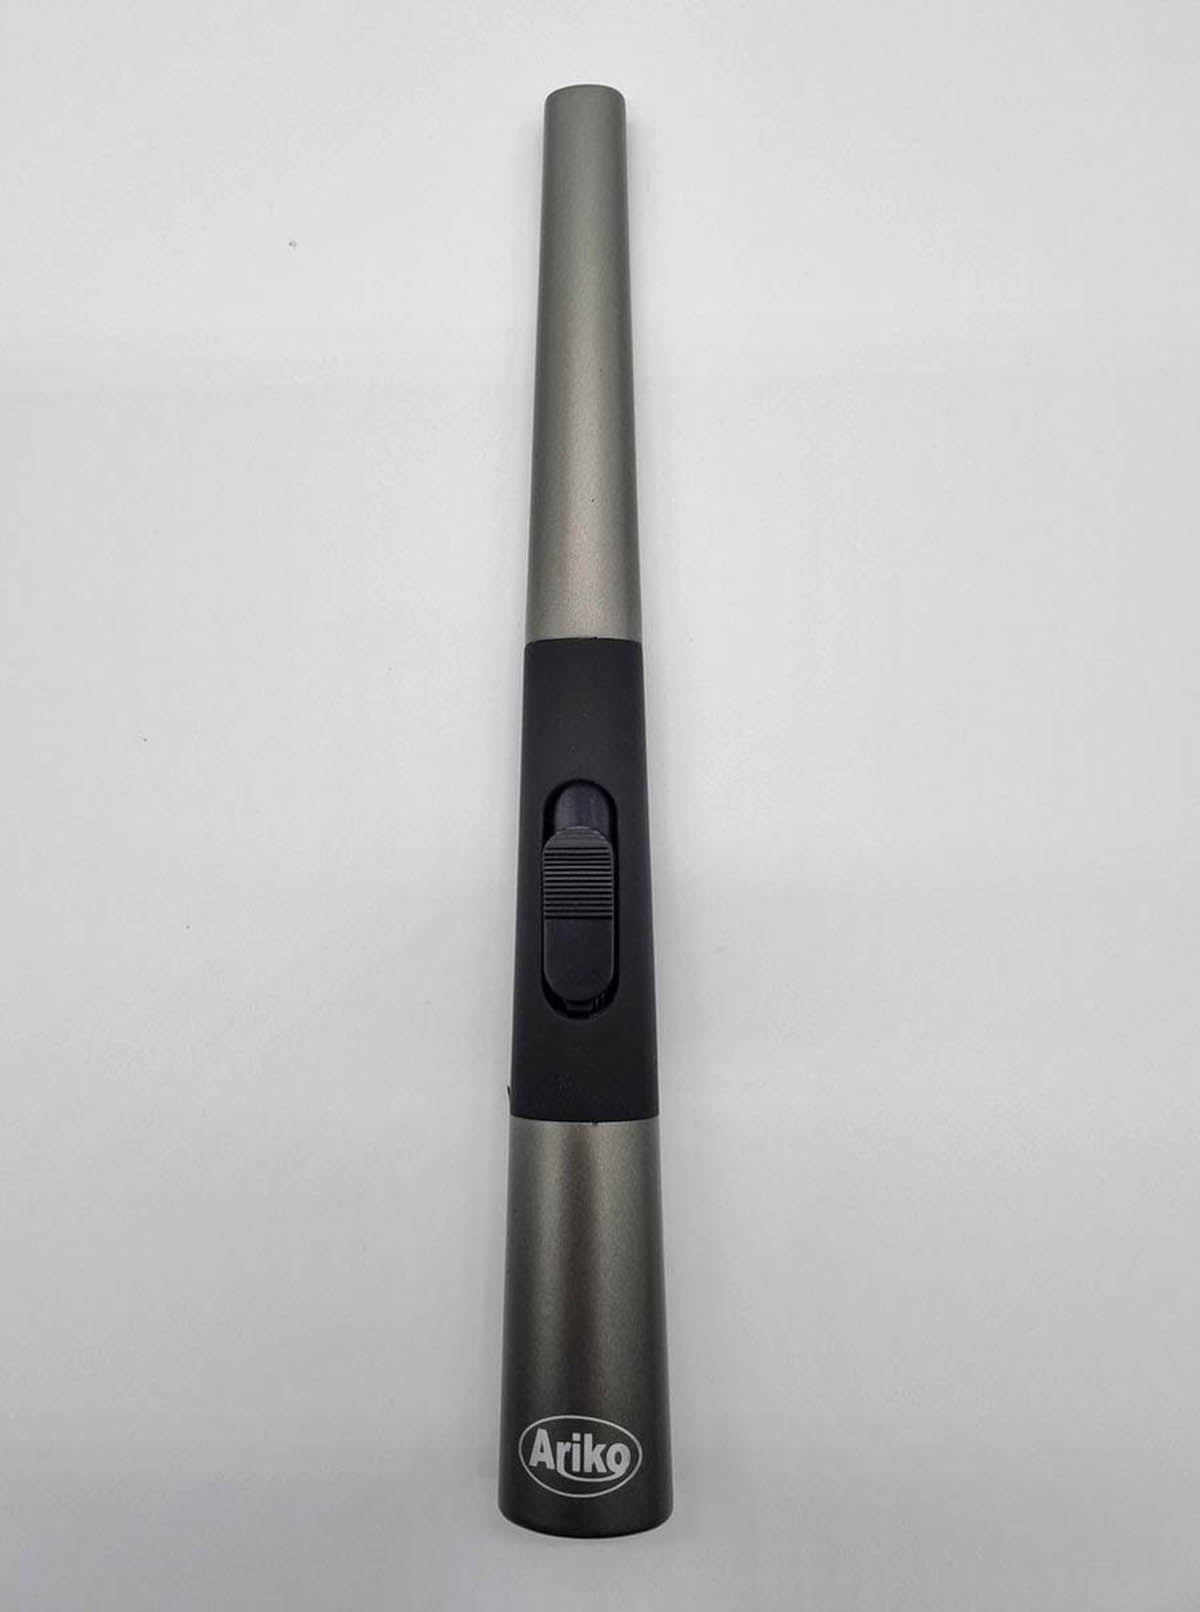 Ariko Luxe Plasma Arc aansteker (Zwart) in cadeaudoos|USB- oplaadbaar| Vlamloze elektrische aansteker voor keuken, kaars, BBQ of openhaard| In- en outdoor| Chique design